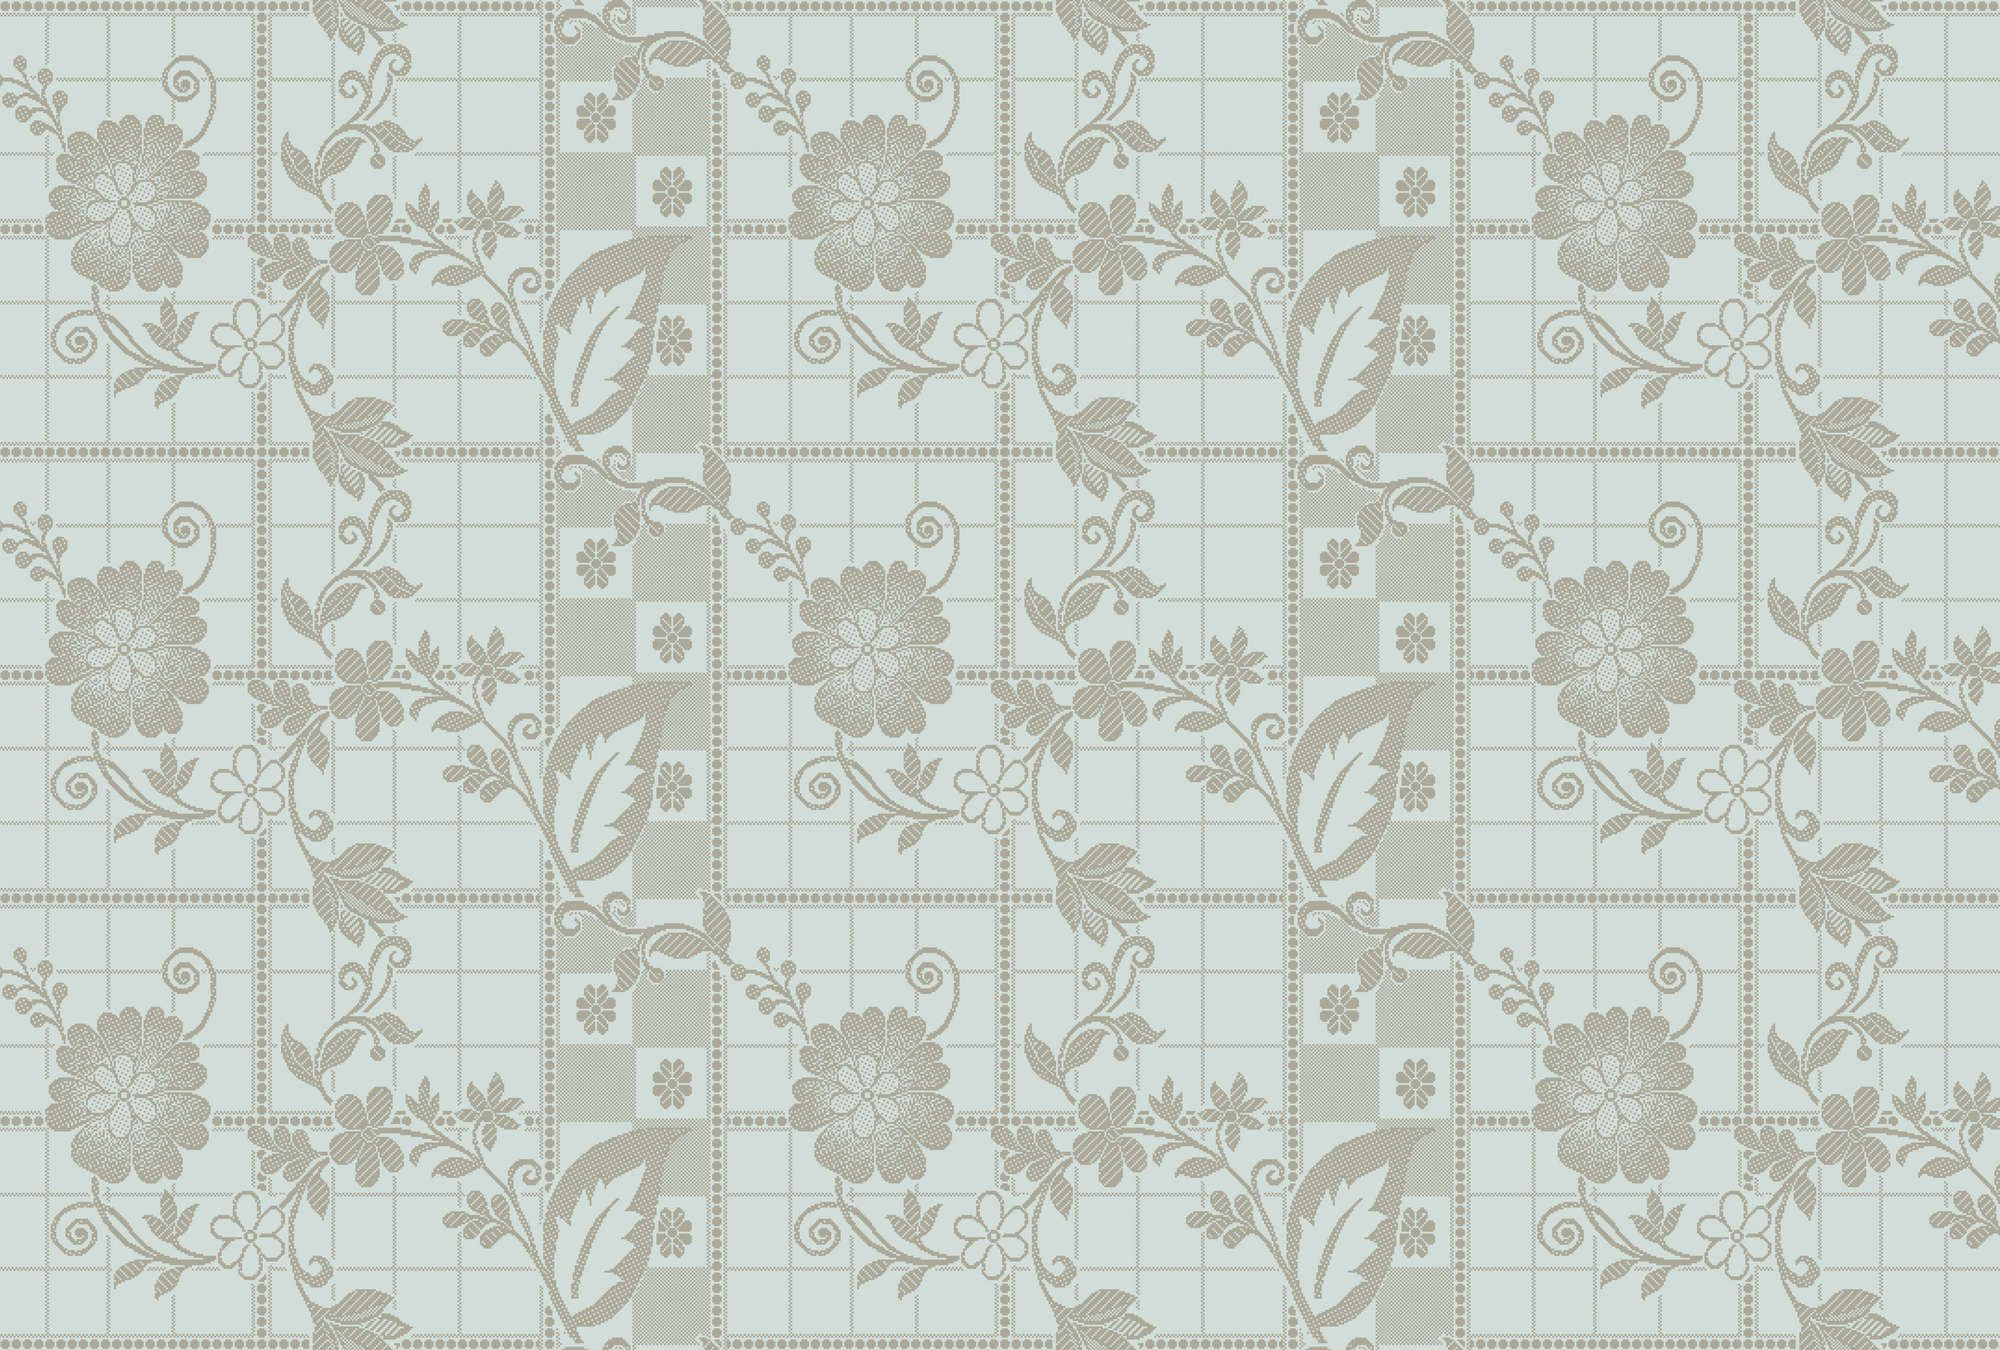             Fototapete »valerie« - Kleine Quadrate im Pixel-Stil mit Blumen – Helles Mintgrün | Glattes, leicht glänzendes Premiumvlies
        